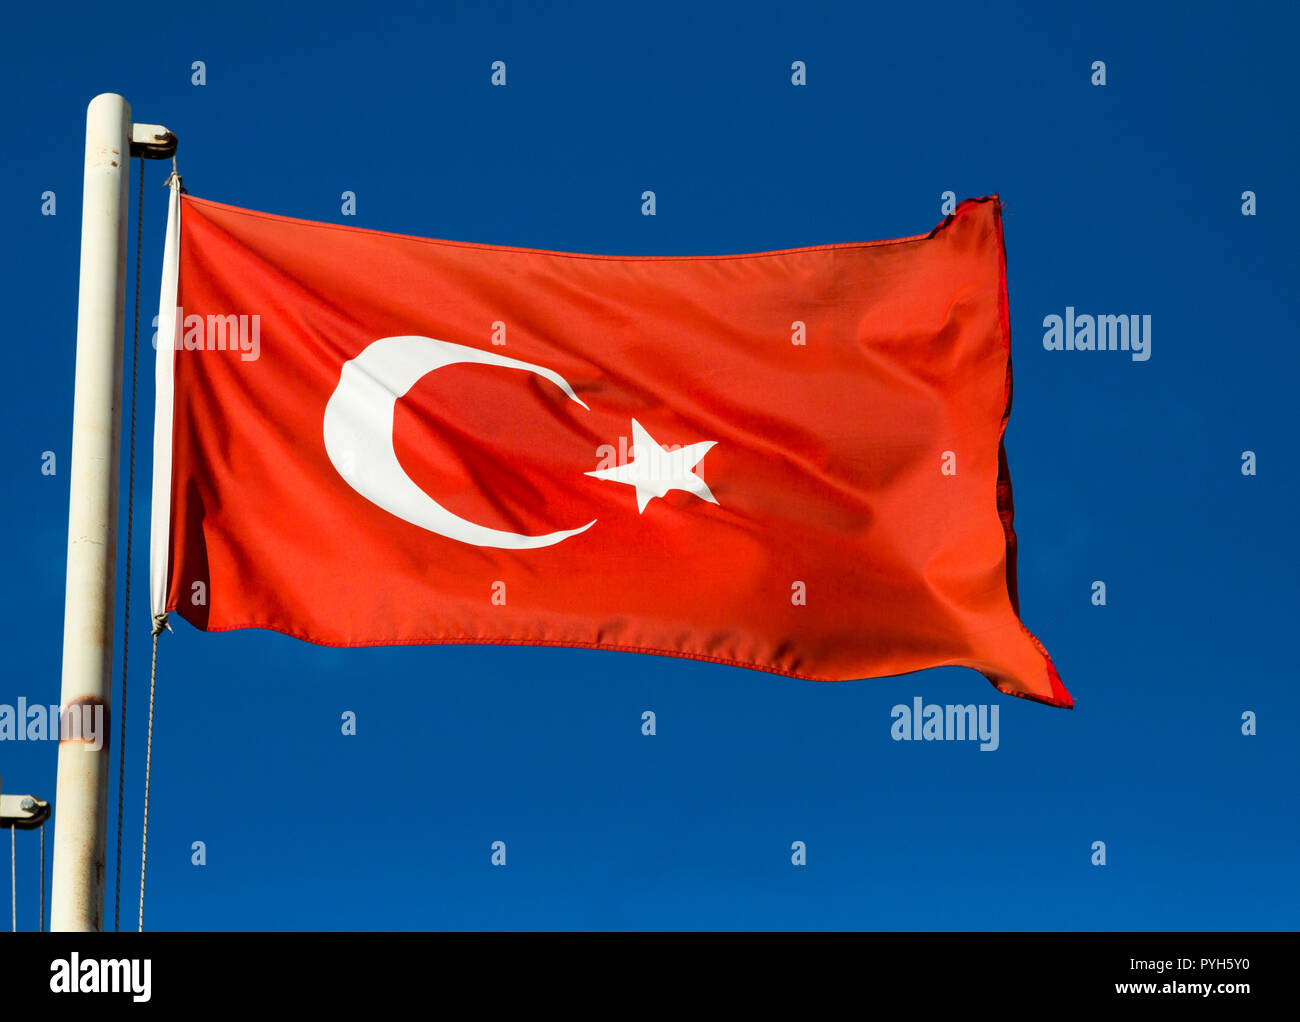 Ankara, Turkey - Turkish flag Stock Photo